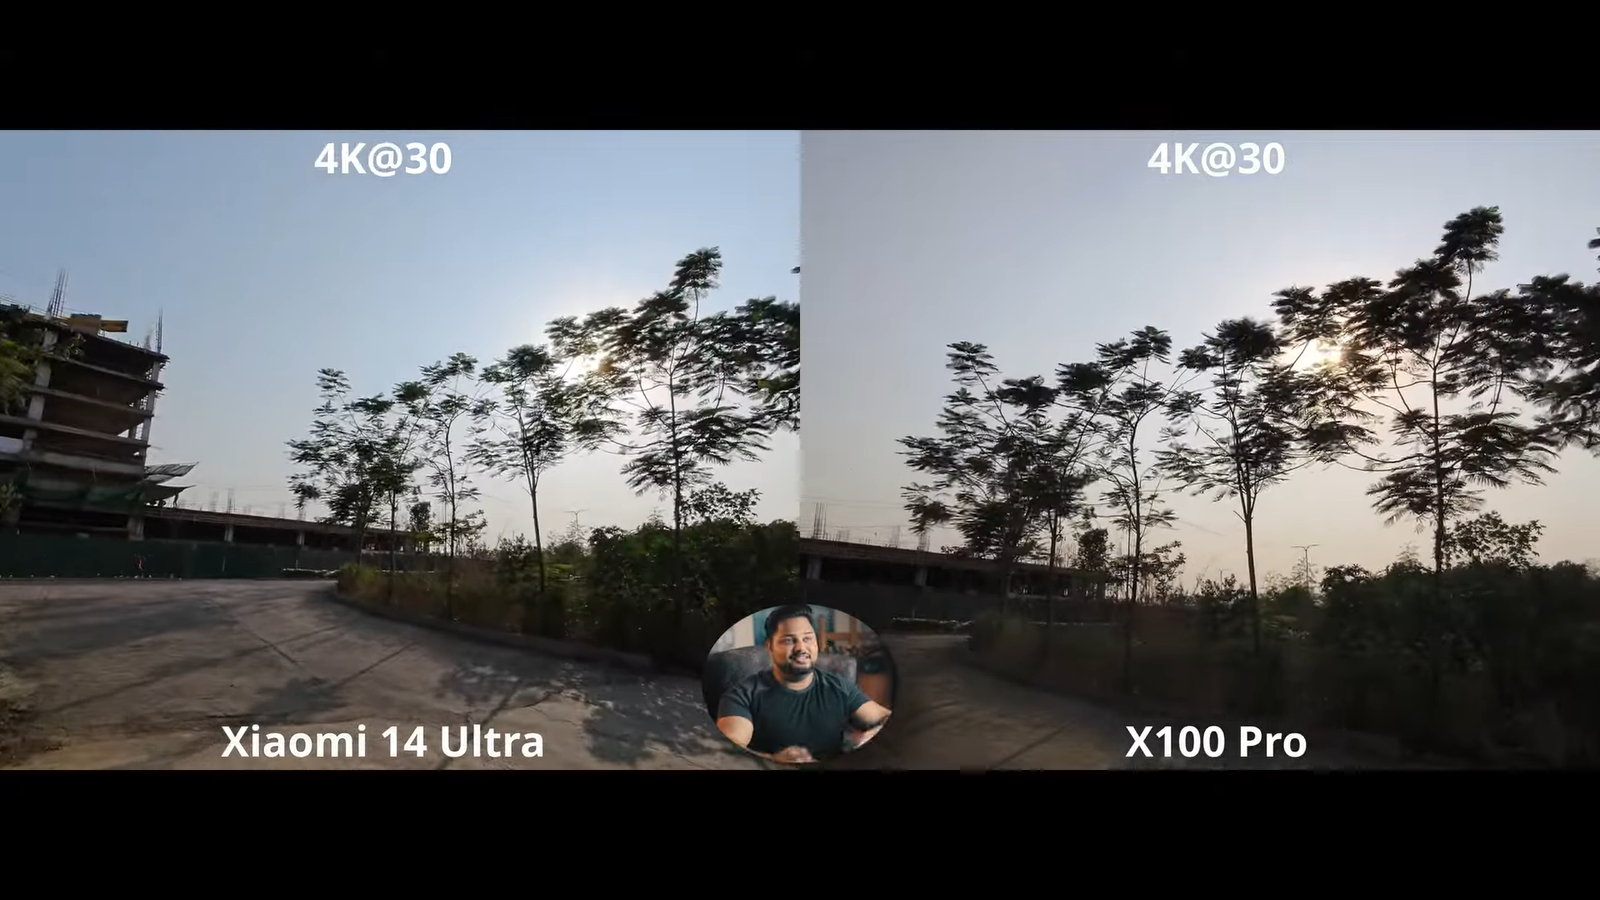 Китайский смартфон с лучшей записью видео: Xiaomi 14 Ultra против Vivo X100 Pro